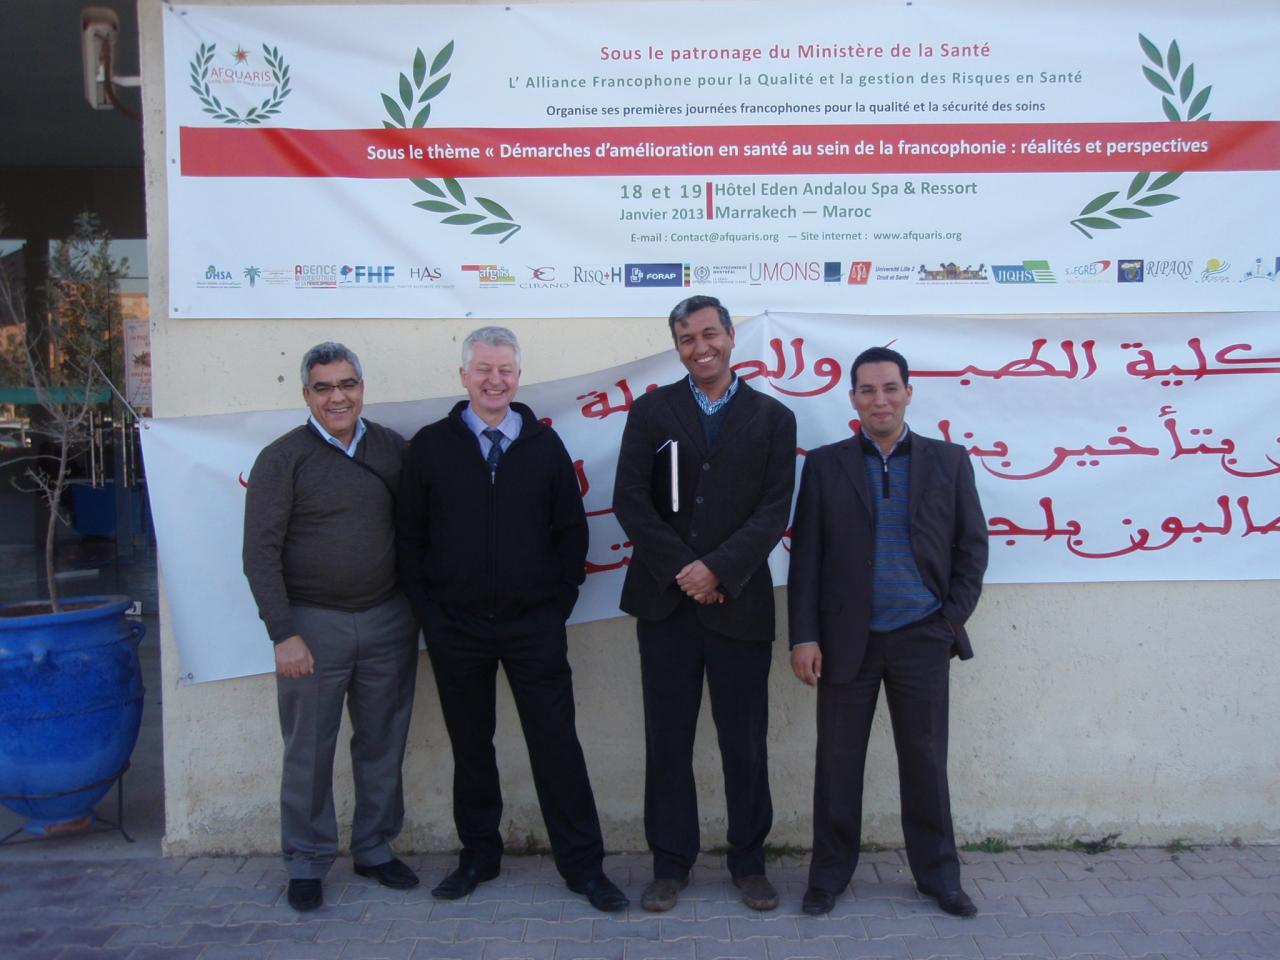 Congrès AFQUARIS, Marrakech 18 et 19 janvier 2013